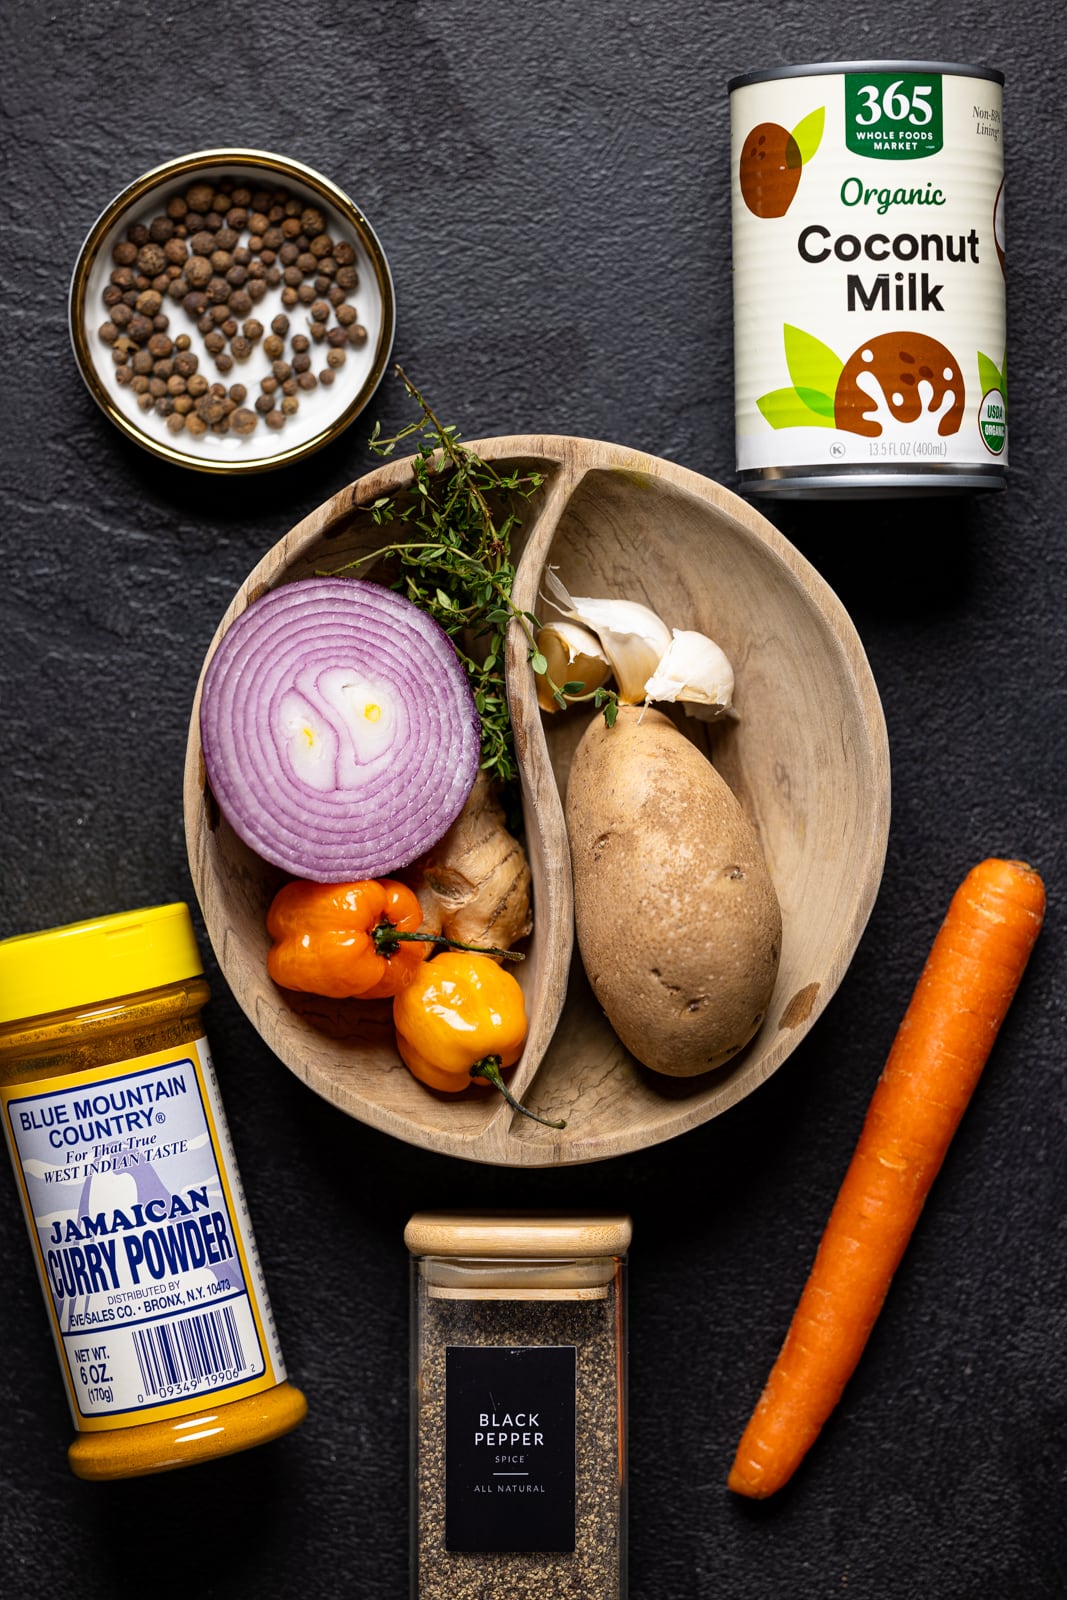 Ingredients including carrot, coconut milk, curry powder, veggies, and herbs + seasonings. 